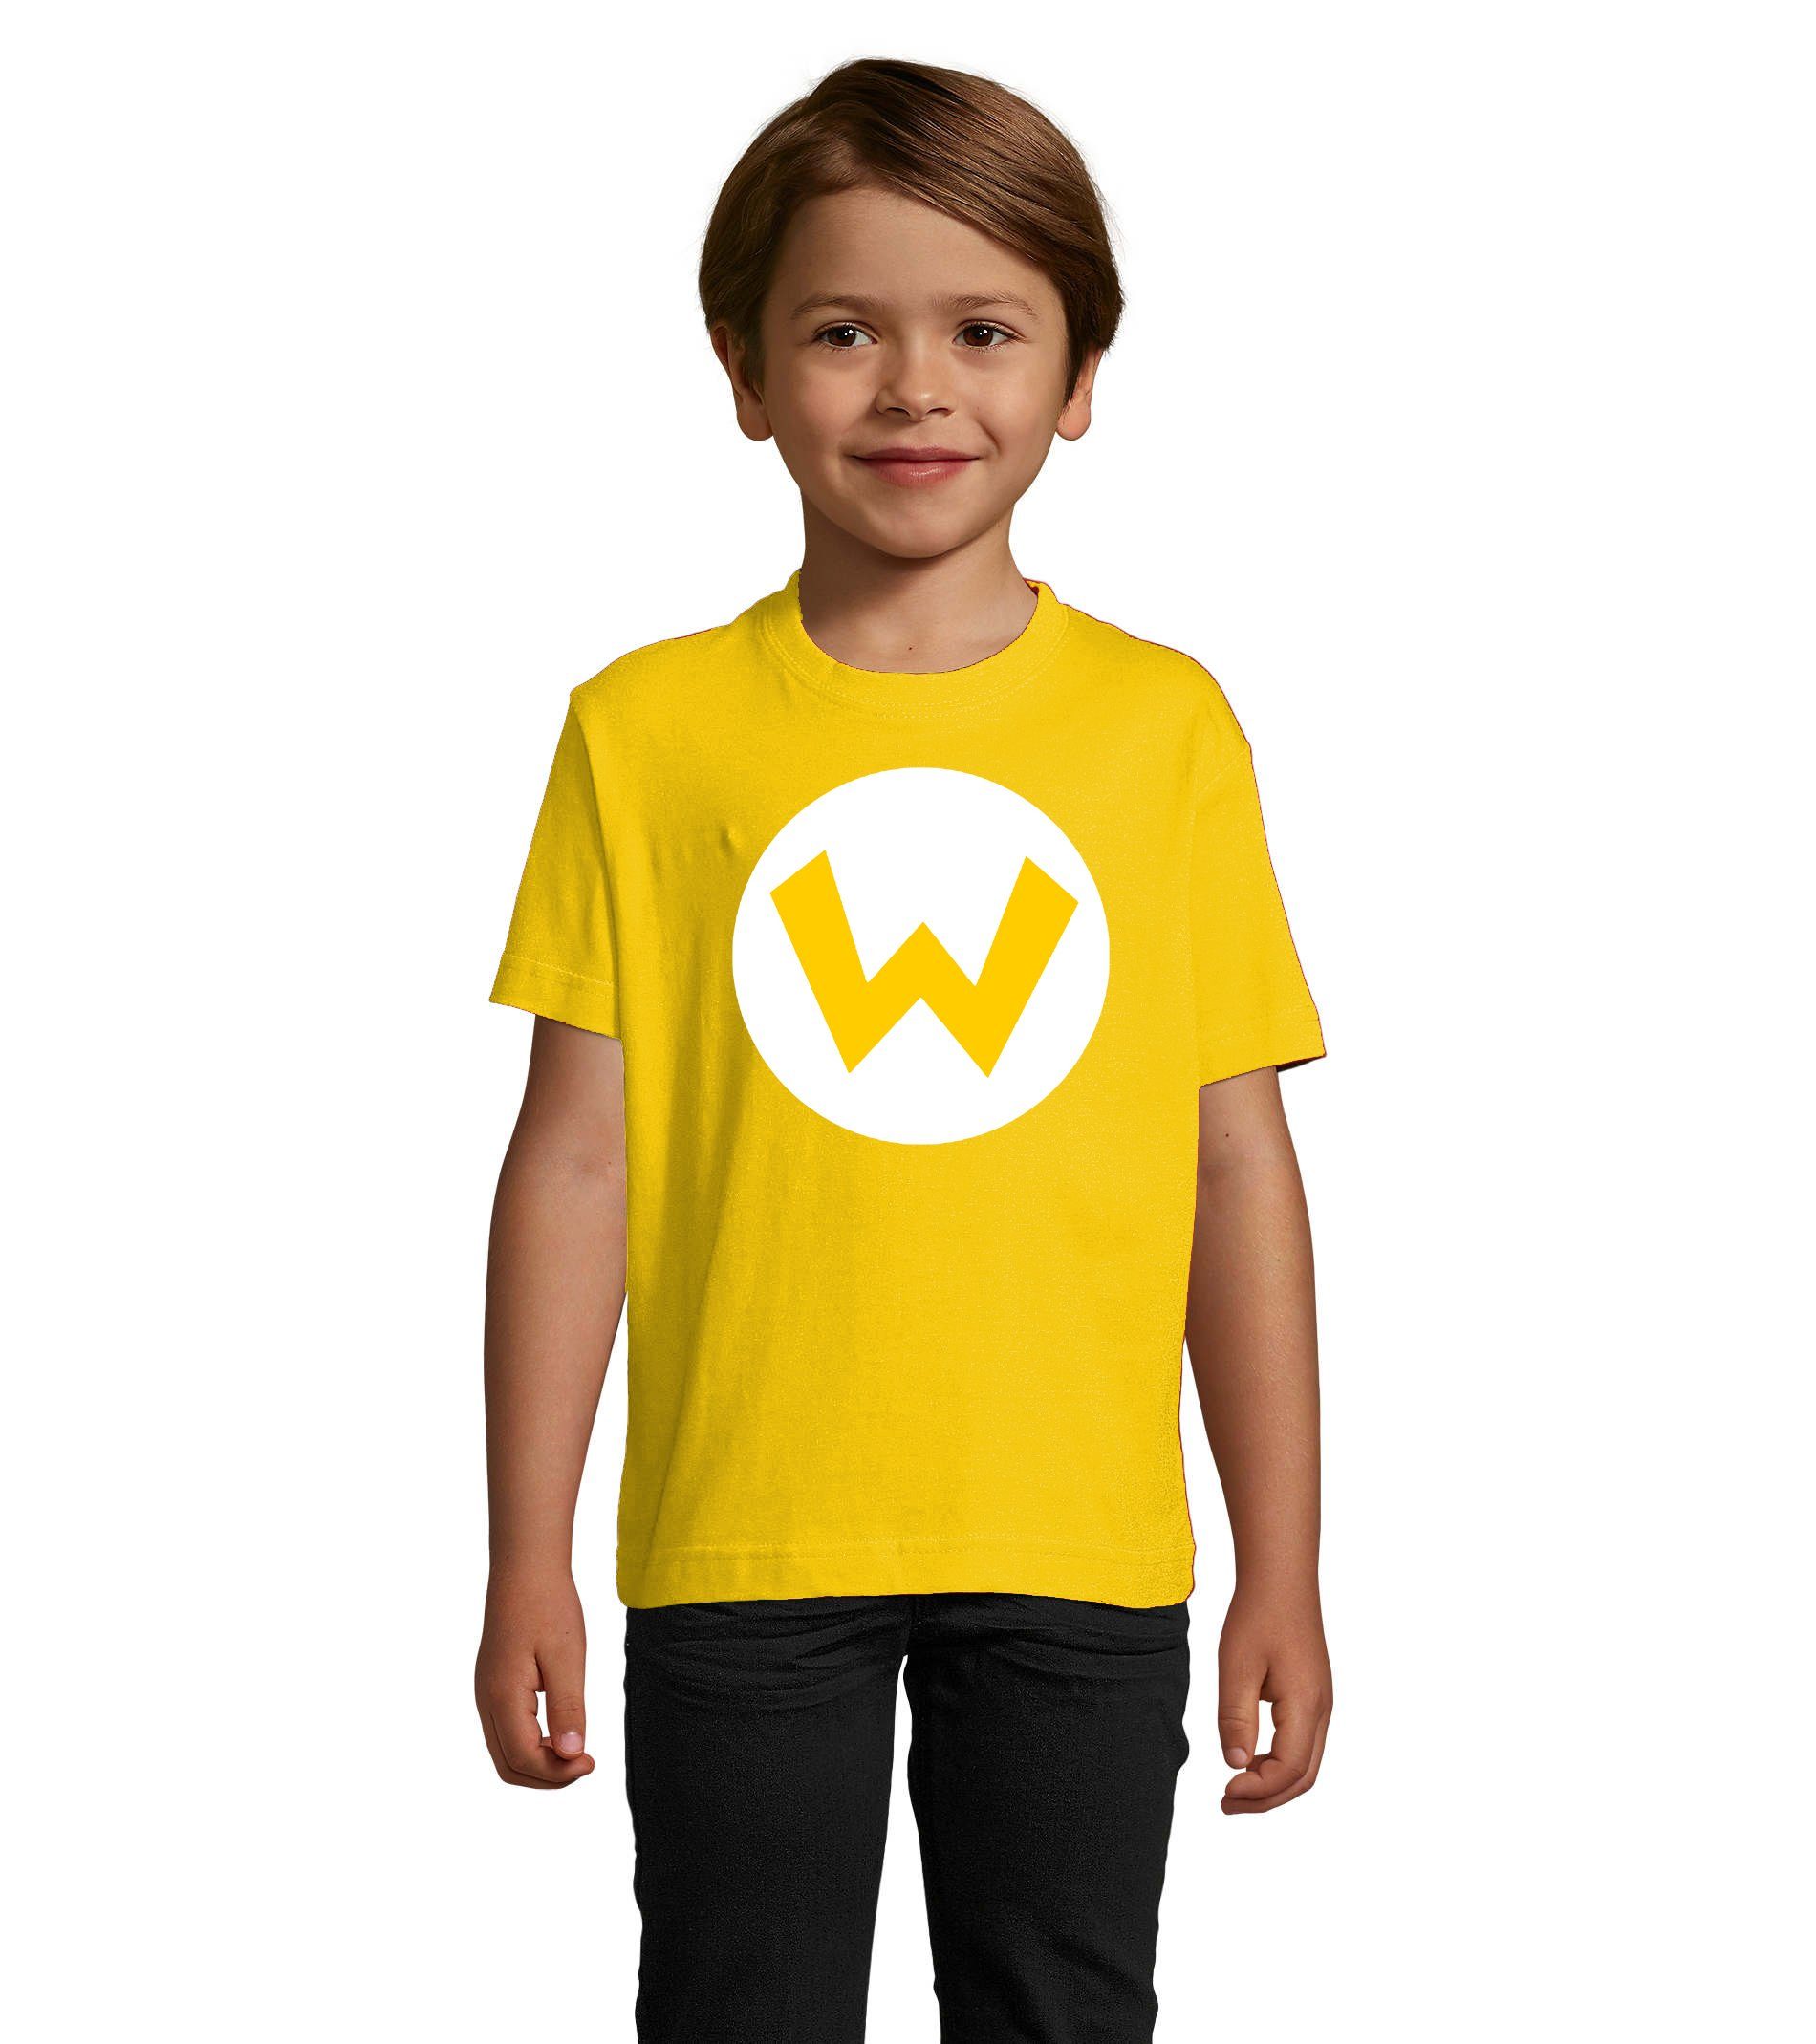 Verkaufsanzeige Blondie & Brownie Nintendo Kinder Grün Jungen T-Shirt Yoshi Wario Mario Luigi & in und Logo (Gelb) Rot Mädchen Luigi